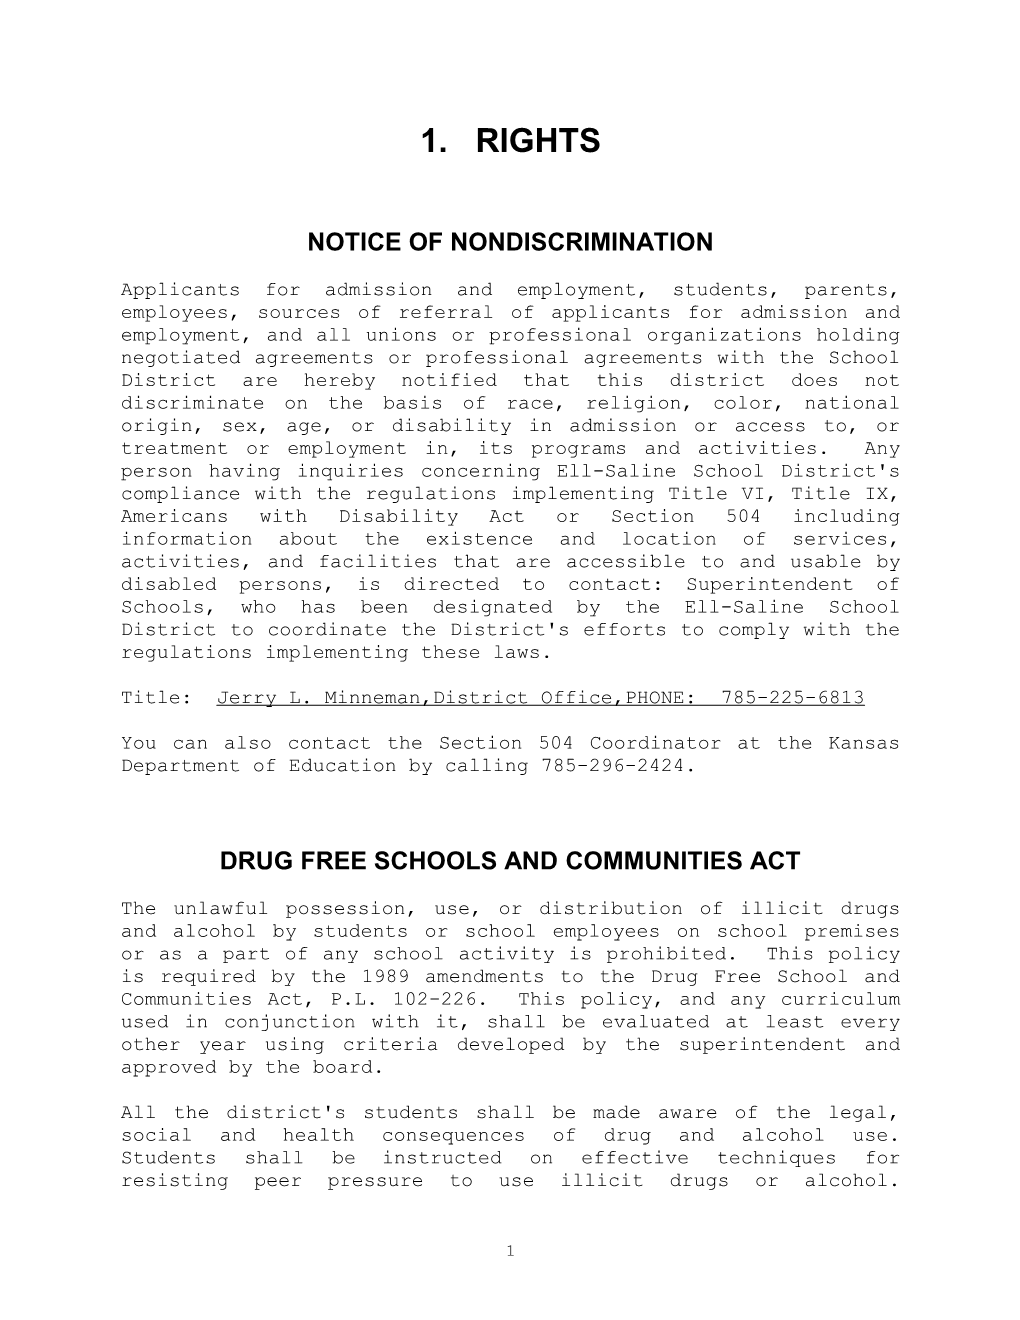 Notice of Nondiscrimination